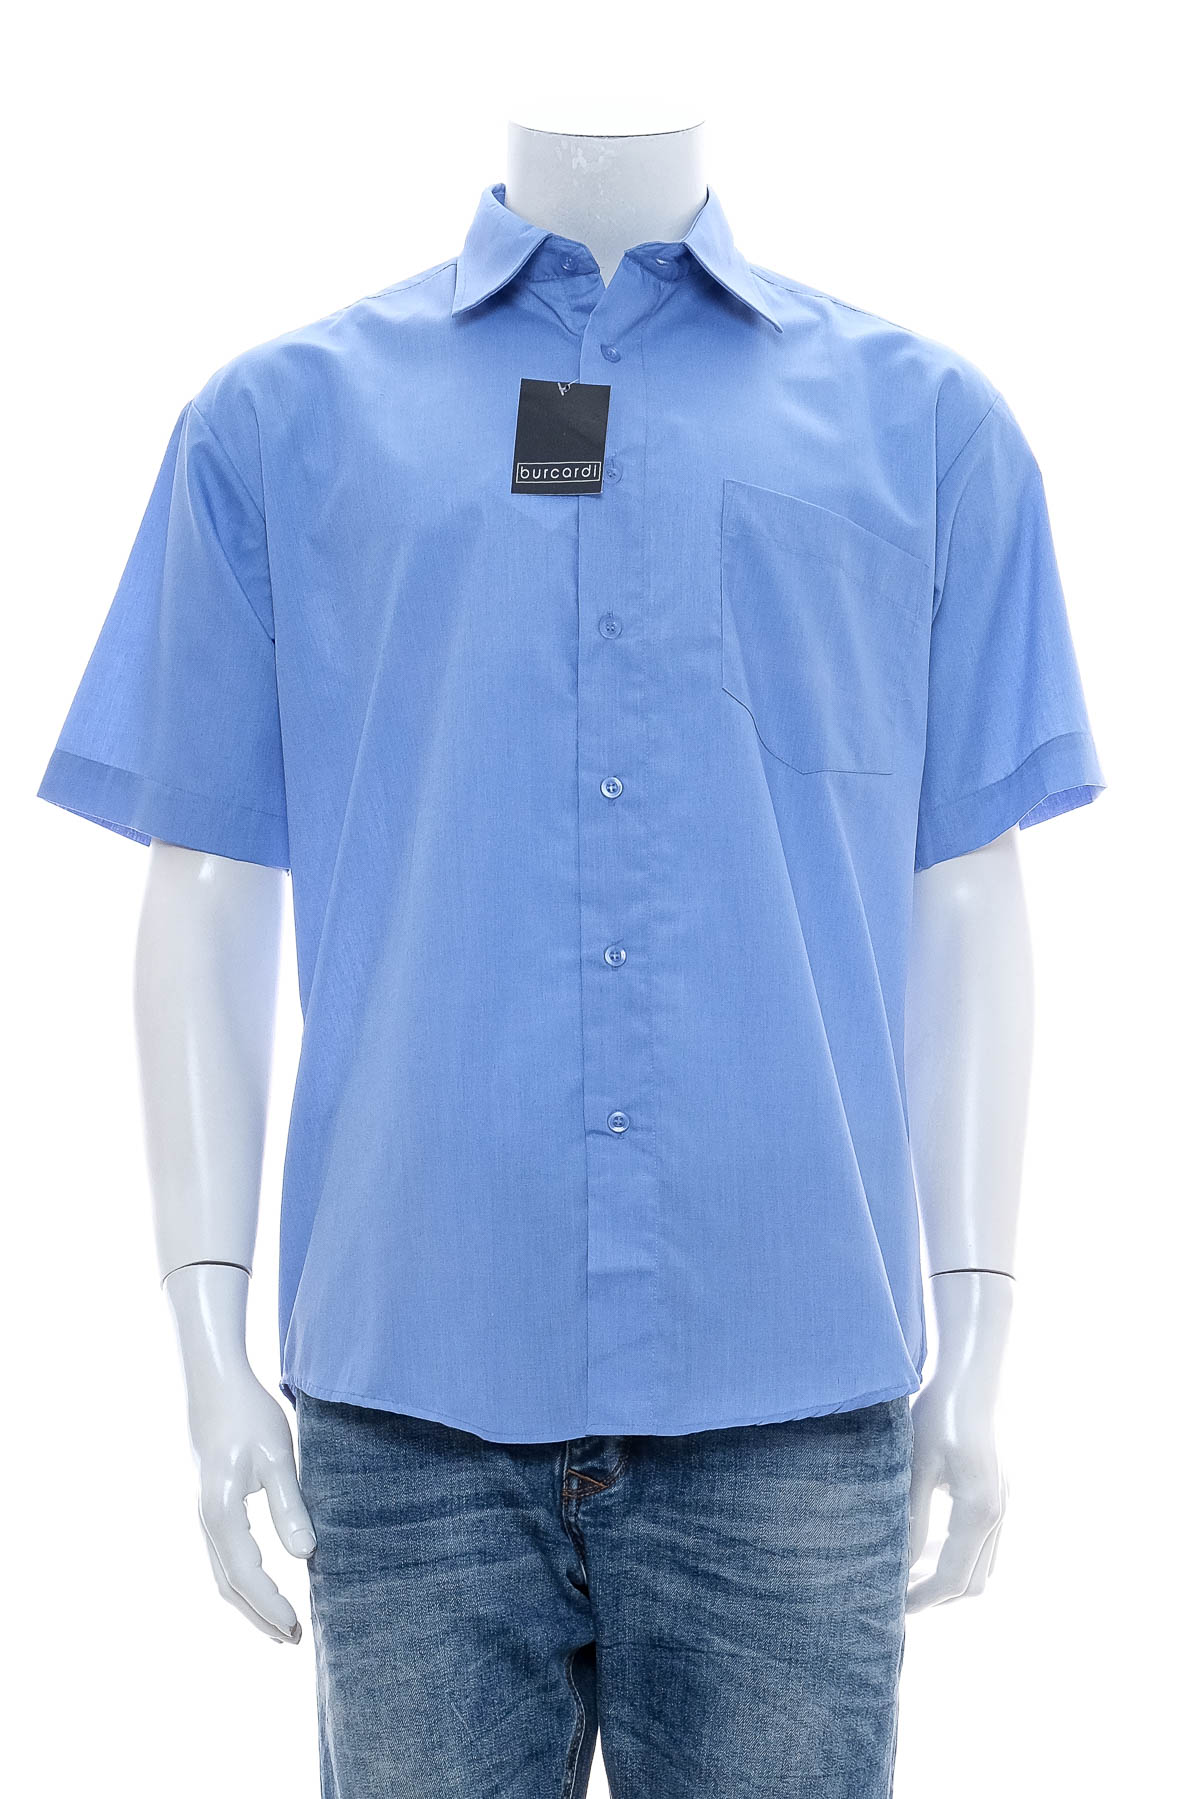 Ανδρικό πουκάμισο - Burcardi - 0